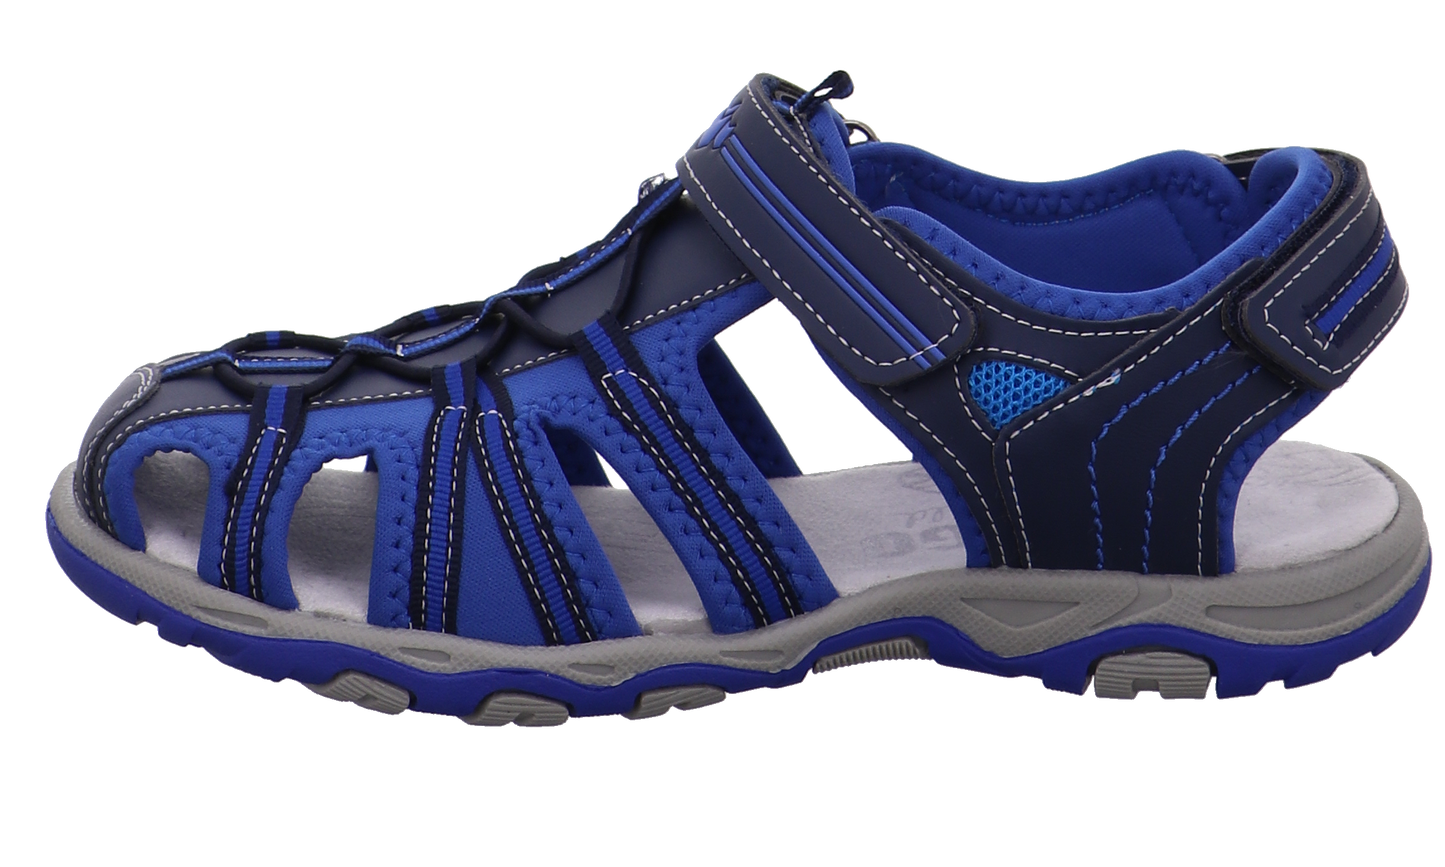 Indigo walk wild Offene Schuhe blau kombi Bild1